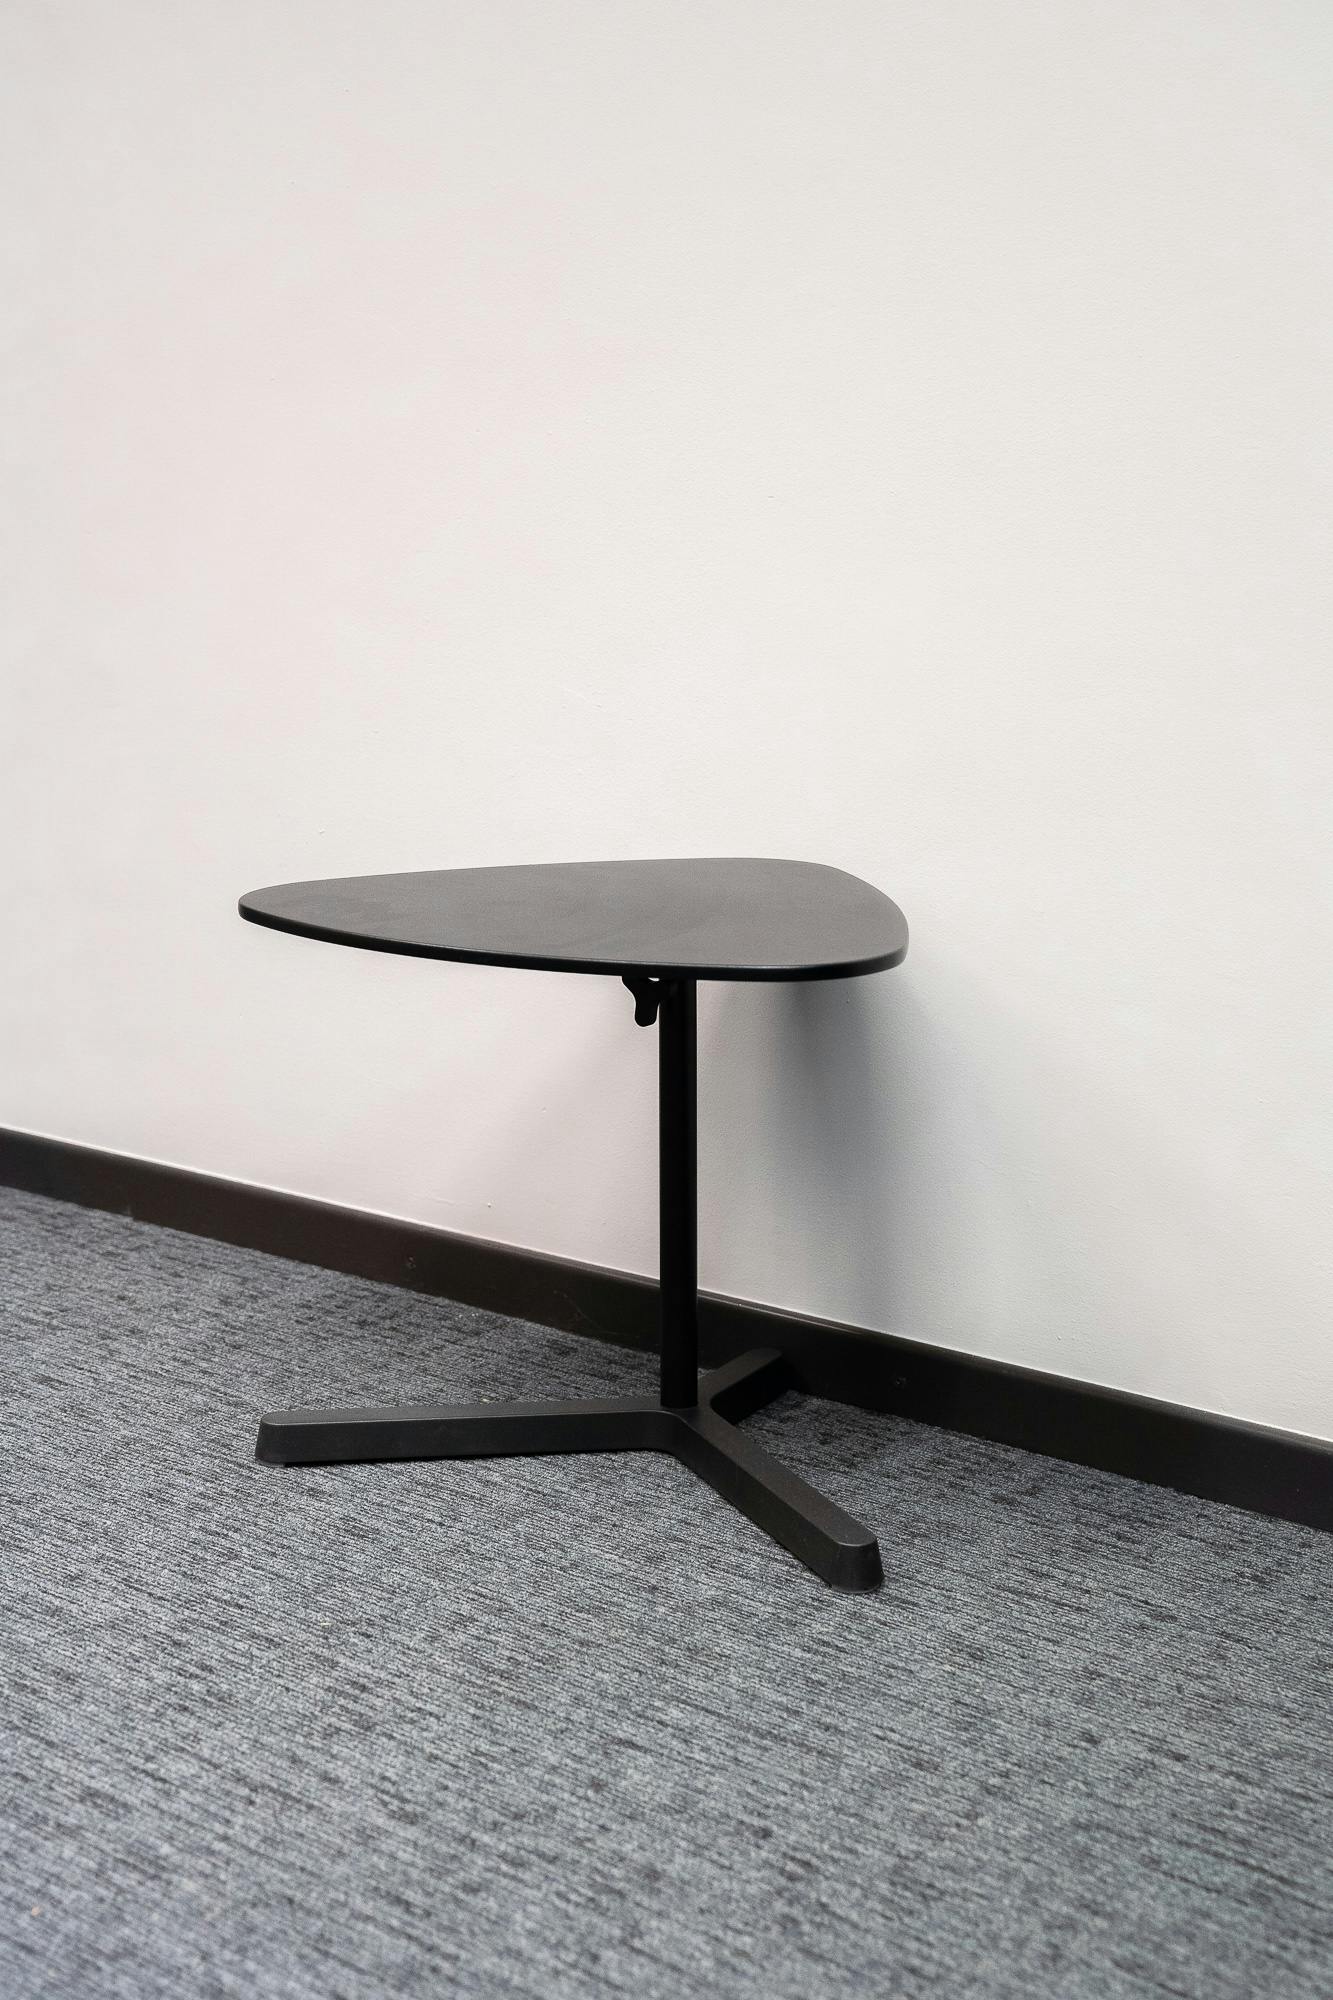 Zwarte salontafel - Tweedehands kwaliteit "Tafels" - Relieve Furniture - 3